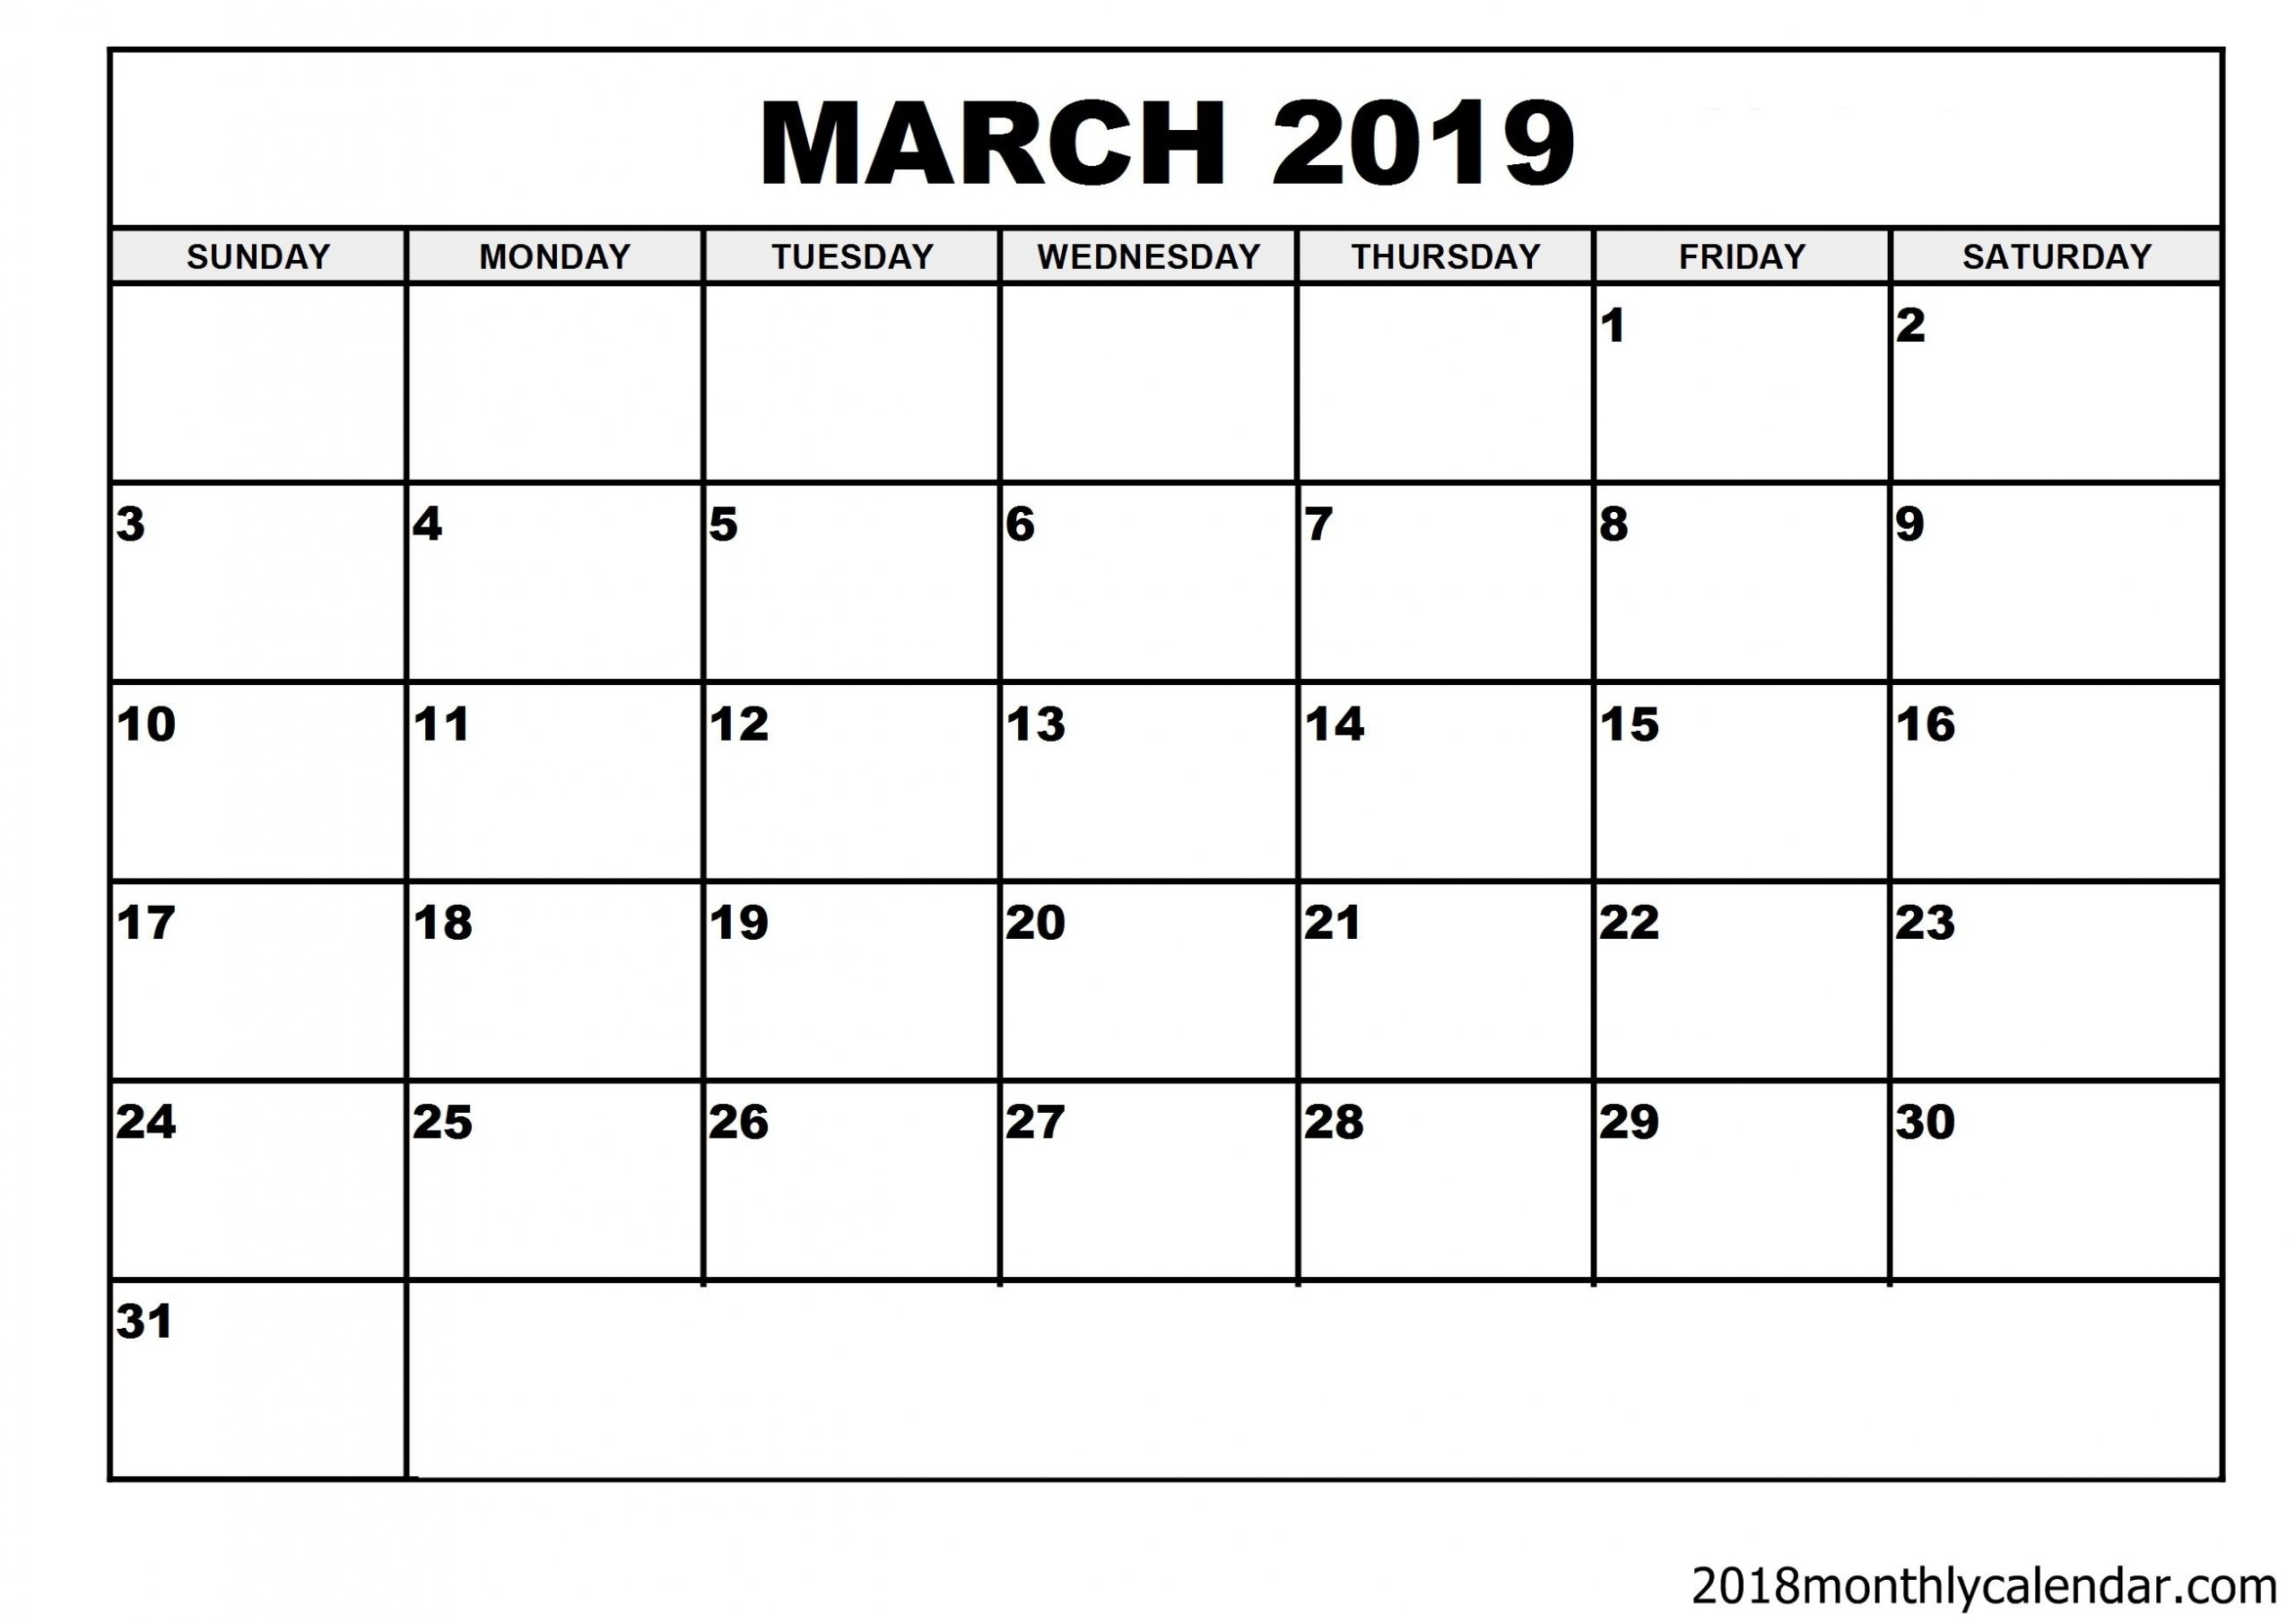 March 2019 Calendar March March2019calendar March2019